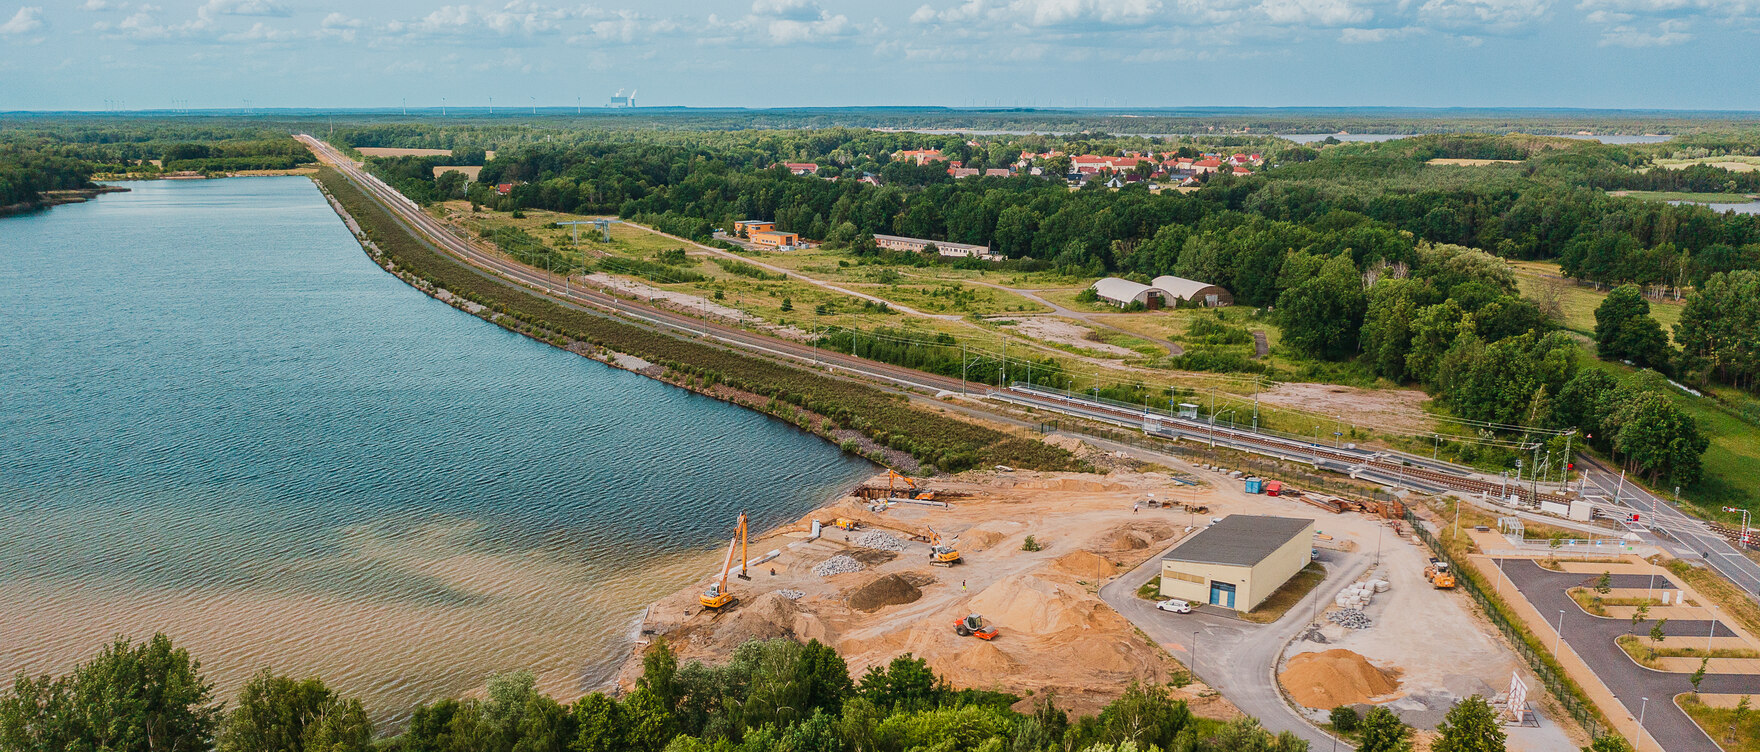 Luftbild von der Baustelle an See und Ufer mit Bagger, Krahn und anderen Baumaschinen 